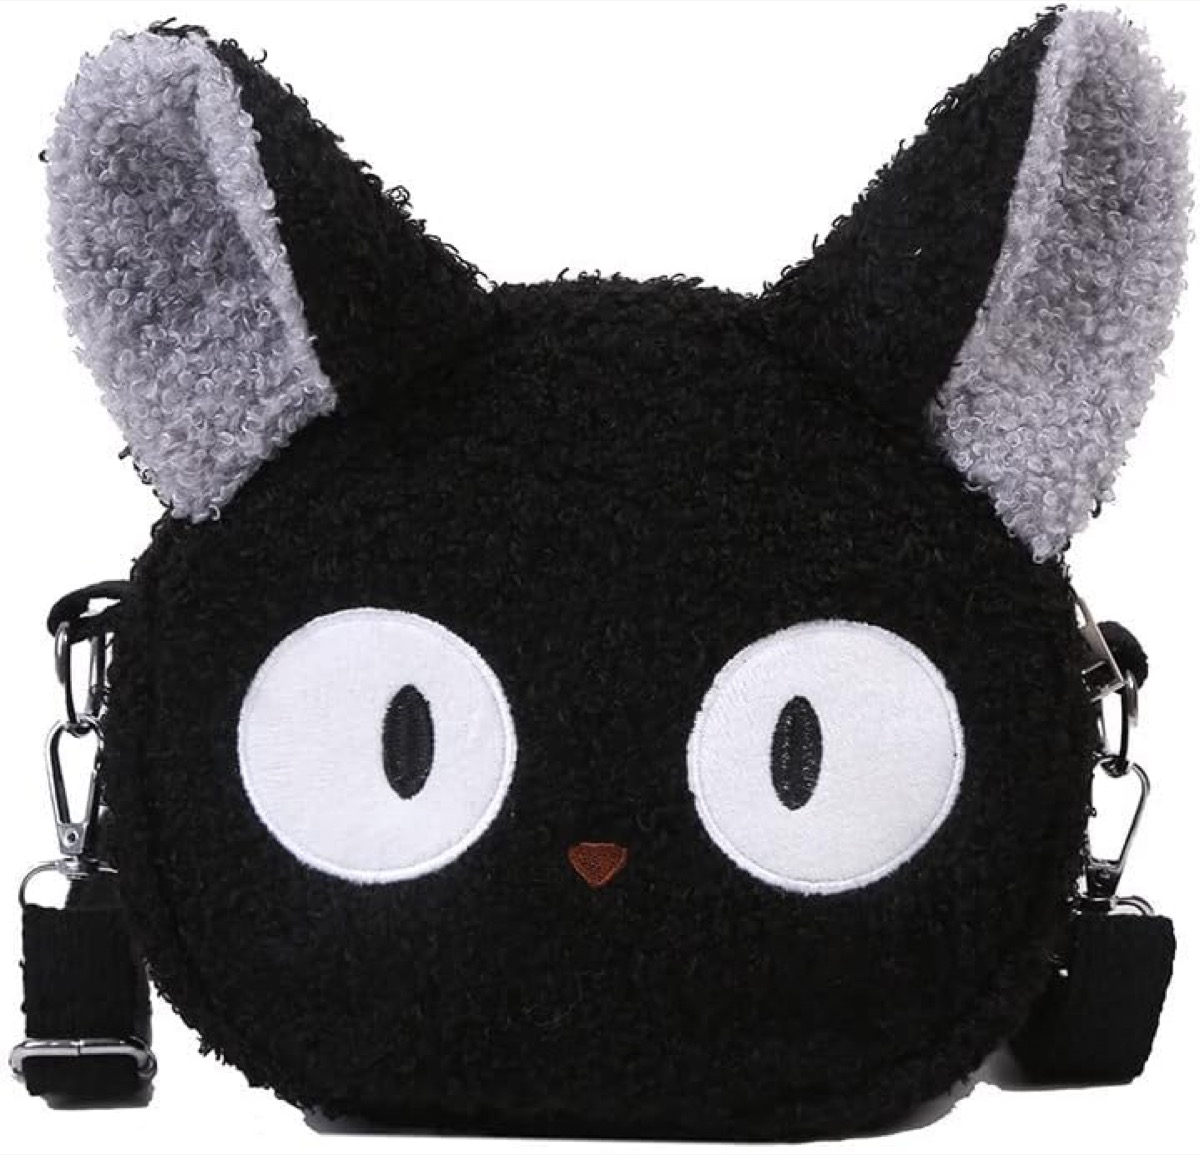 A purse shaped like a black anime cat